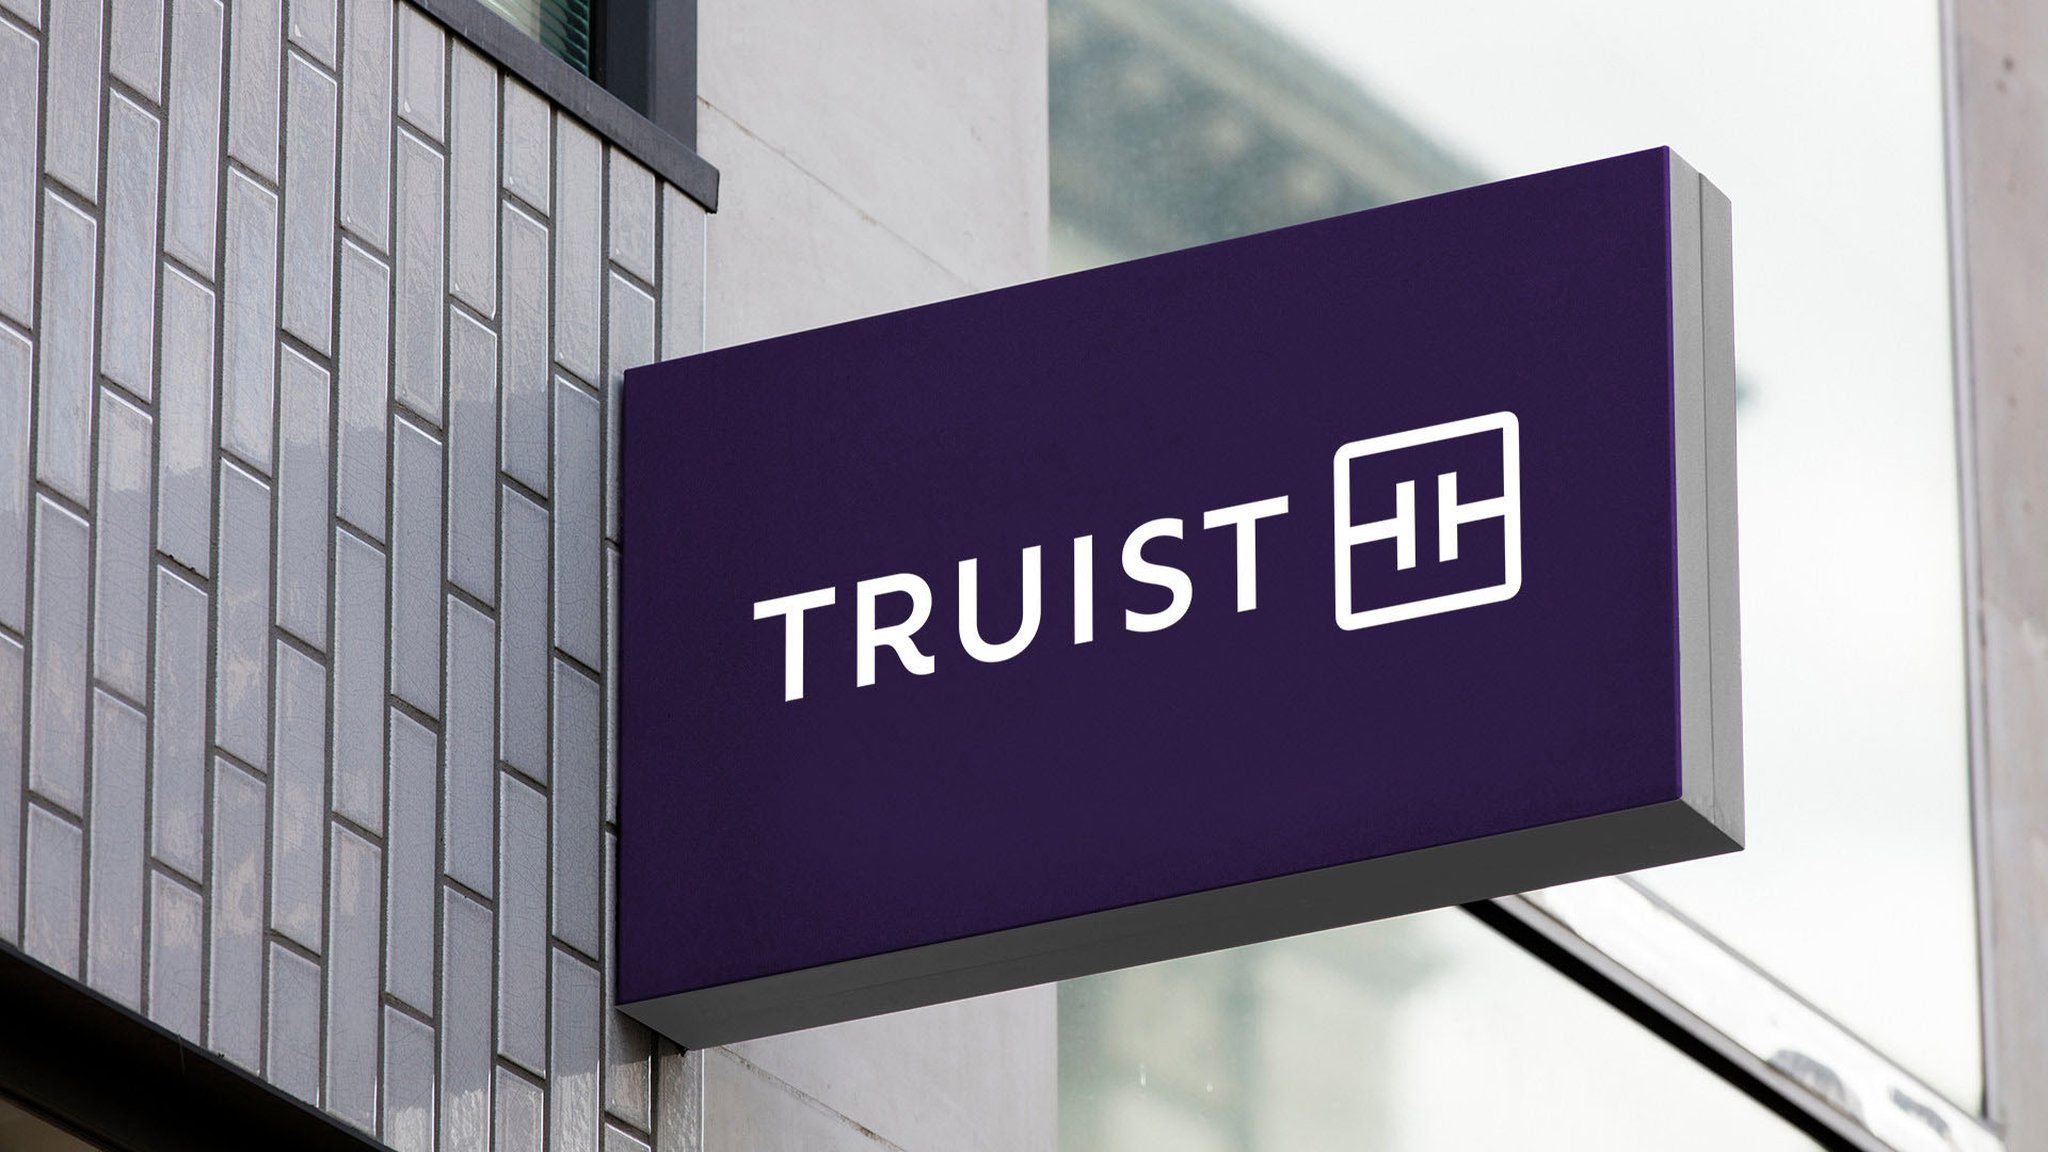 SunTrust successor Truist rolls out new purple brand logo